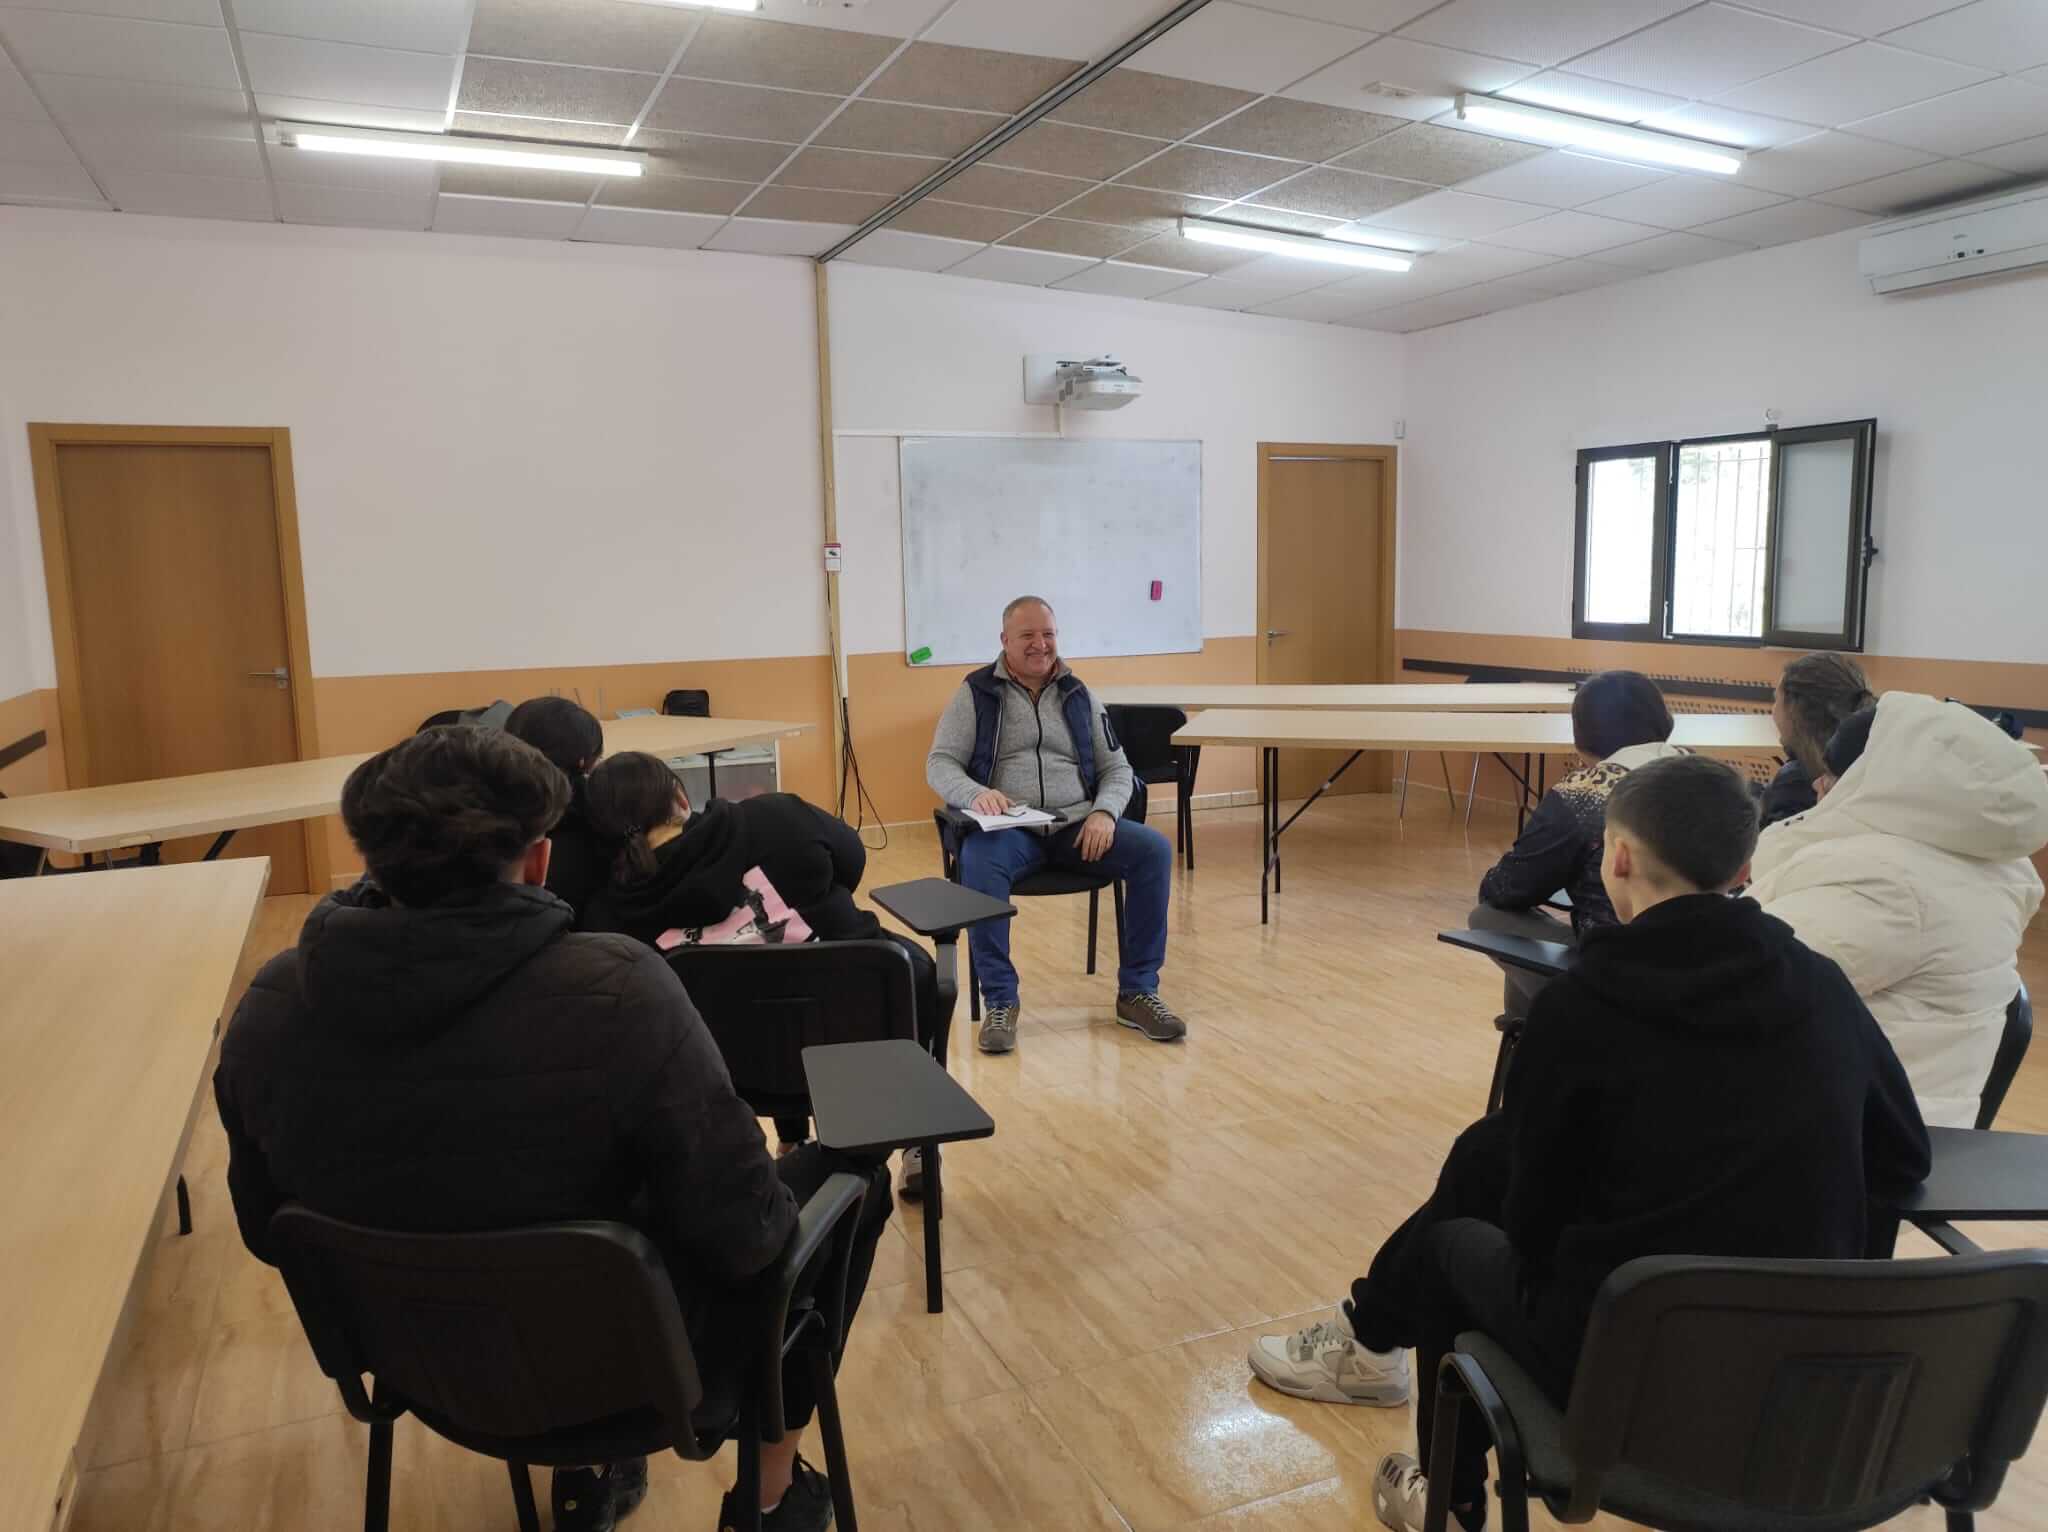 La Concejalía de Educación refuerza su apoyo al Centro de Día ‘Amigos del Cerezo’ de Villena